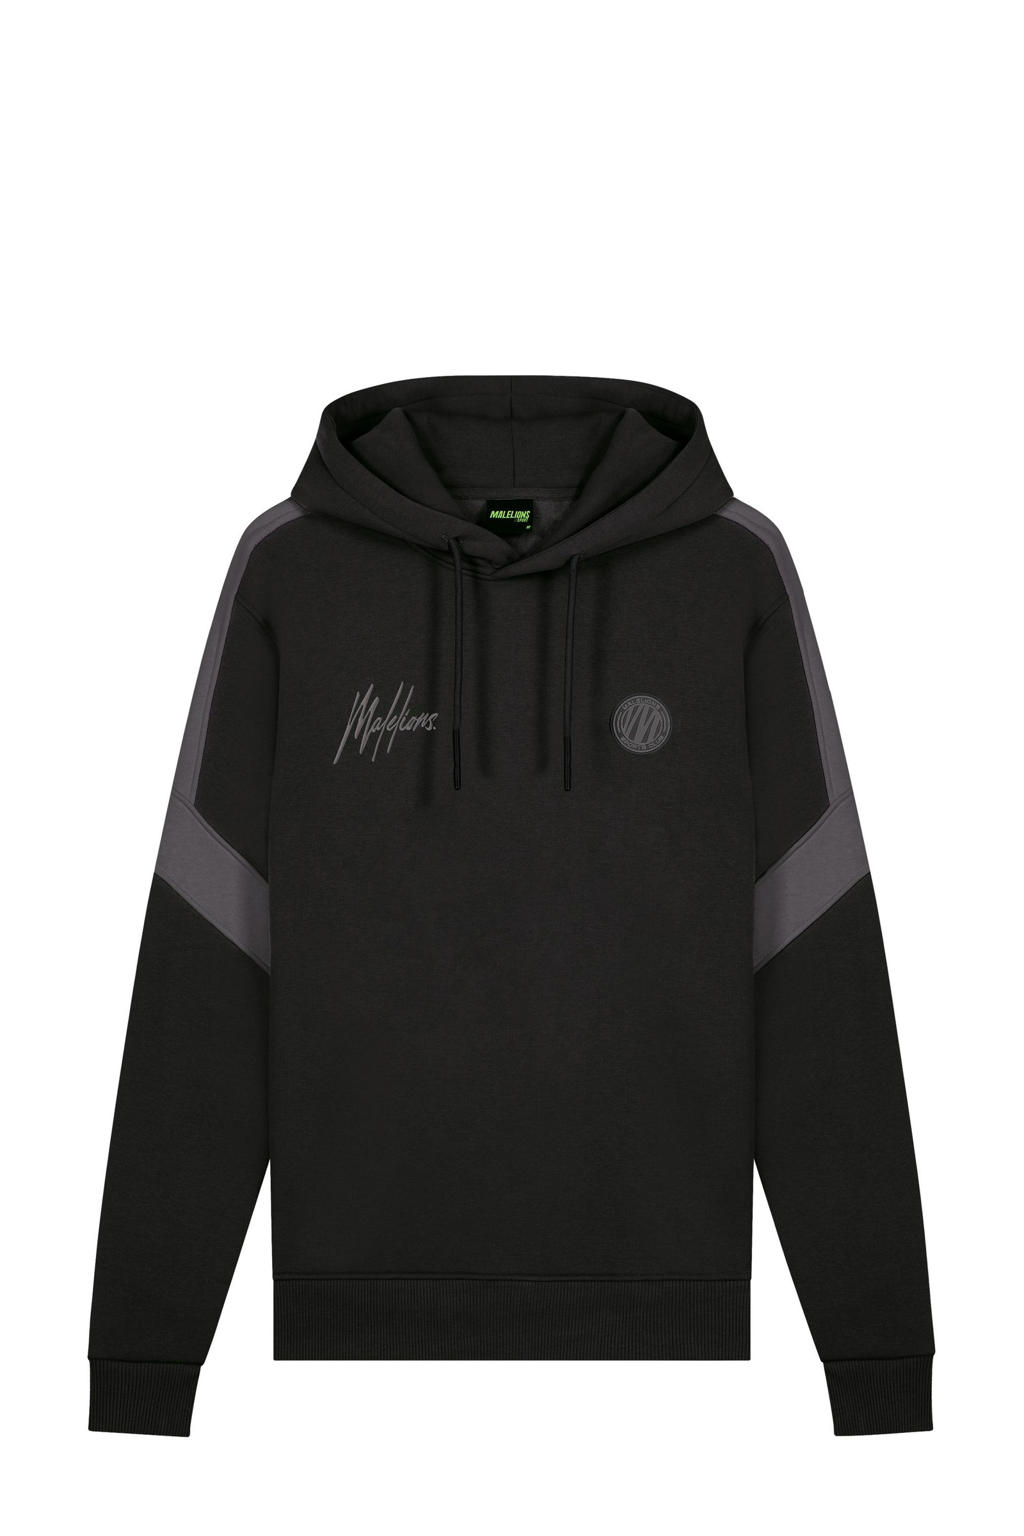 Malelions hoodie zwart/grijs